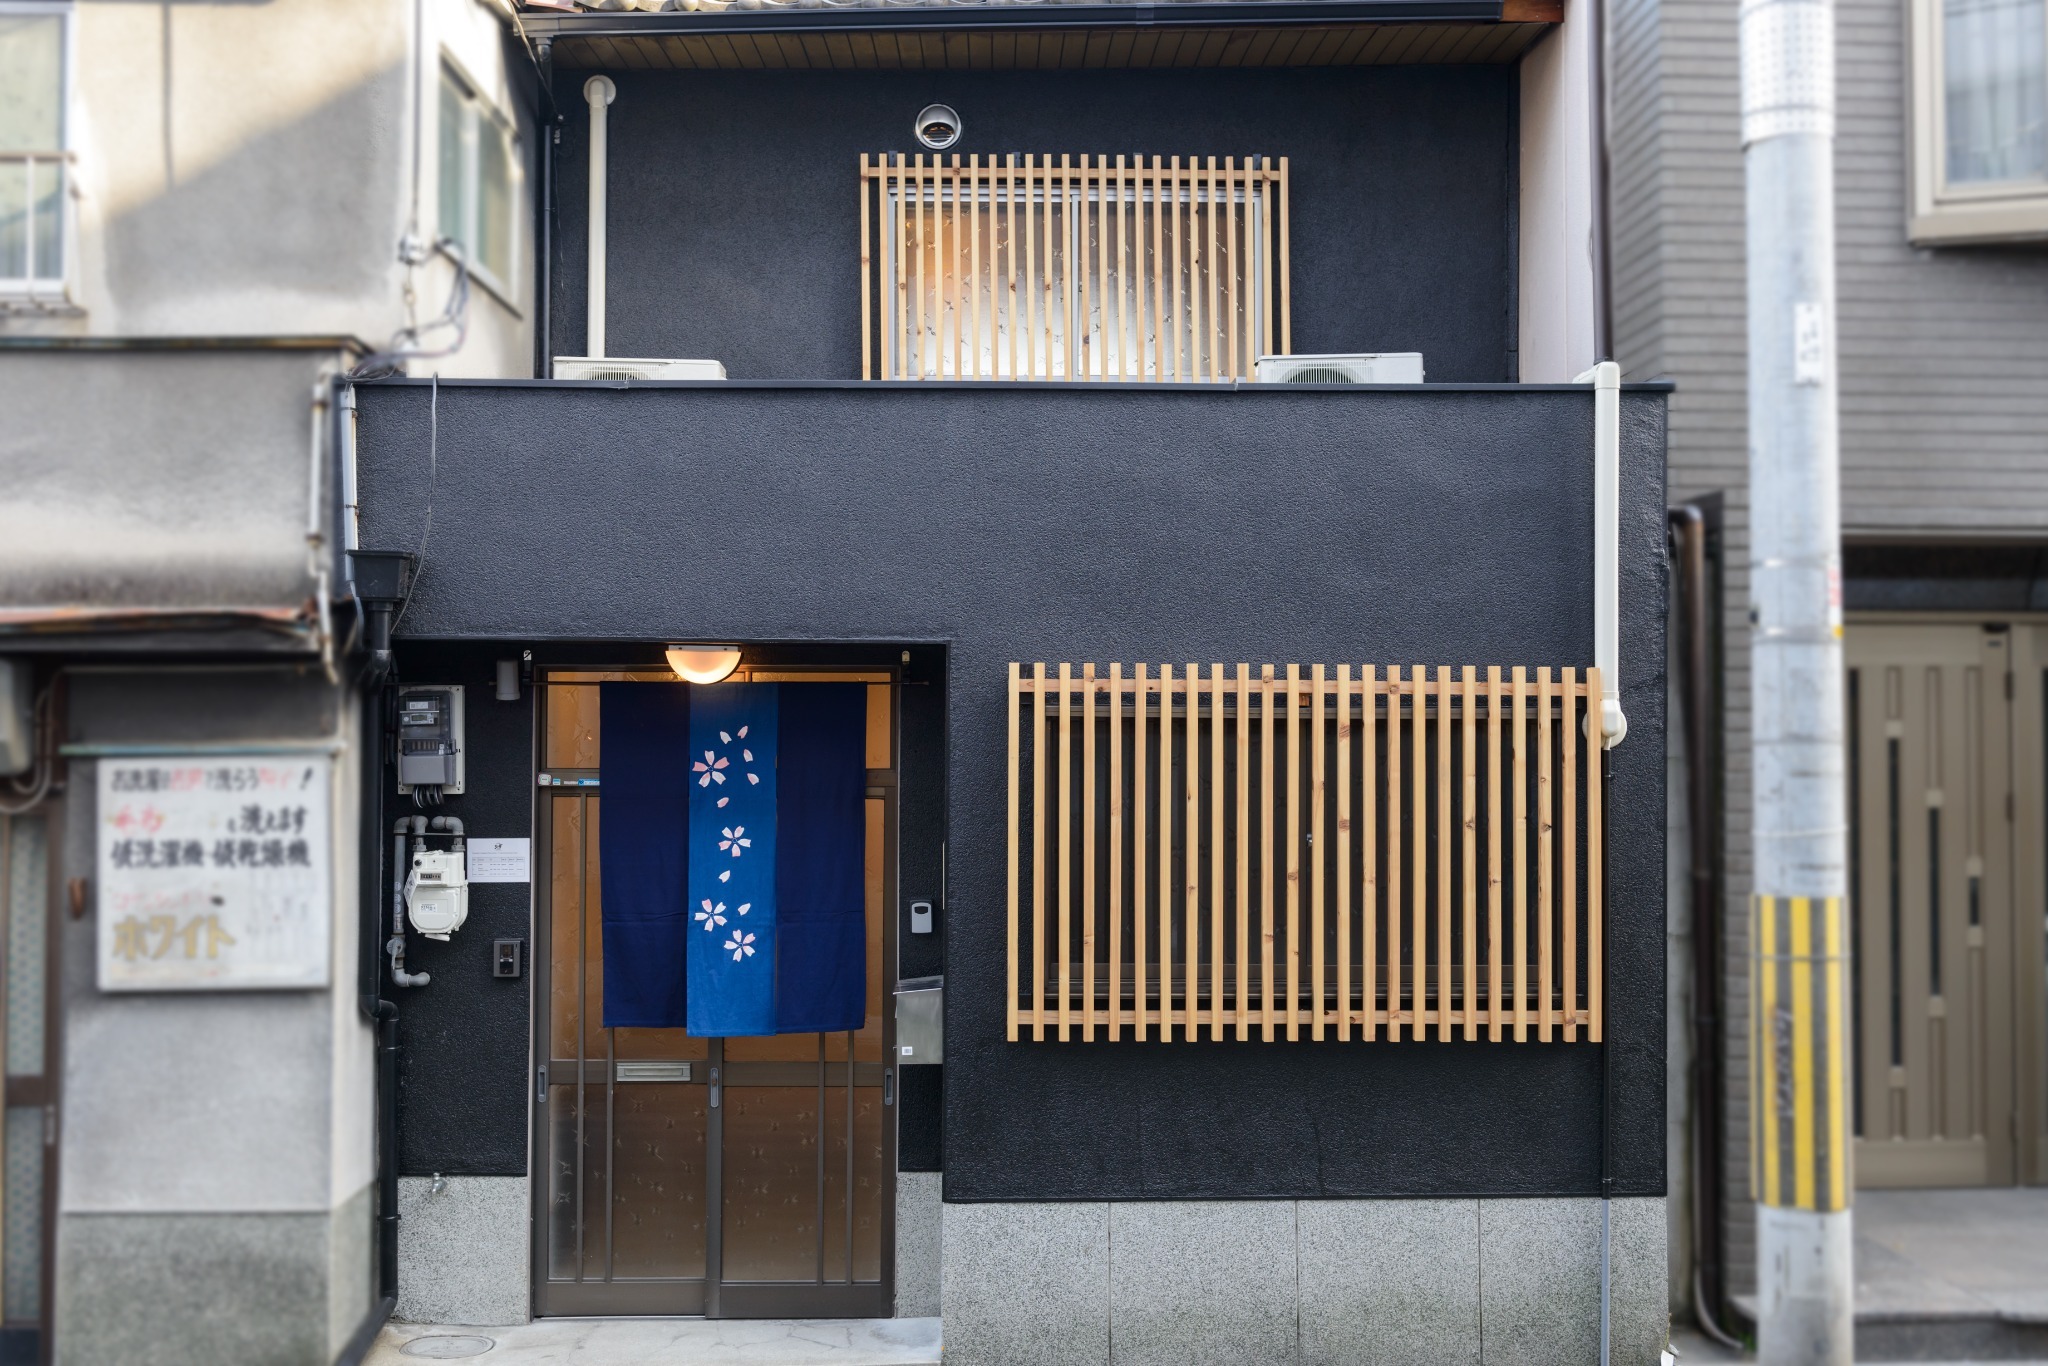 Shiki Homes | KURUMI 胡桃 